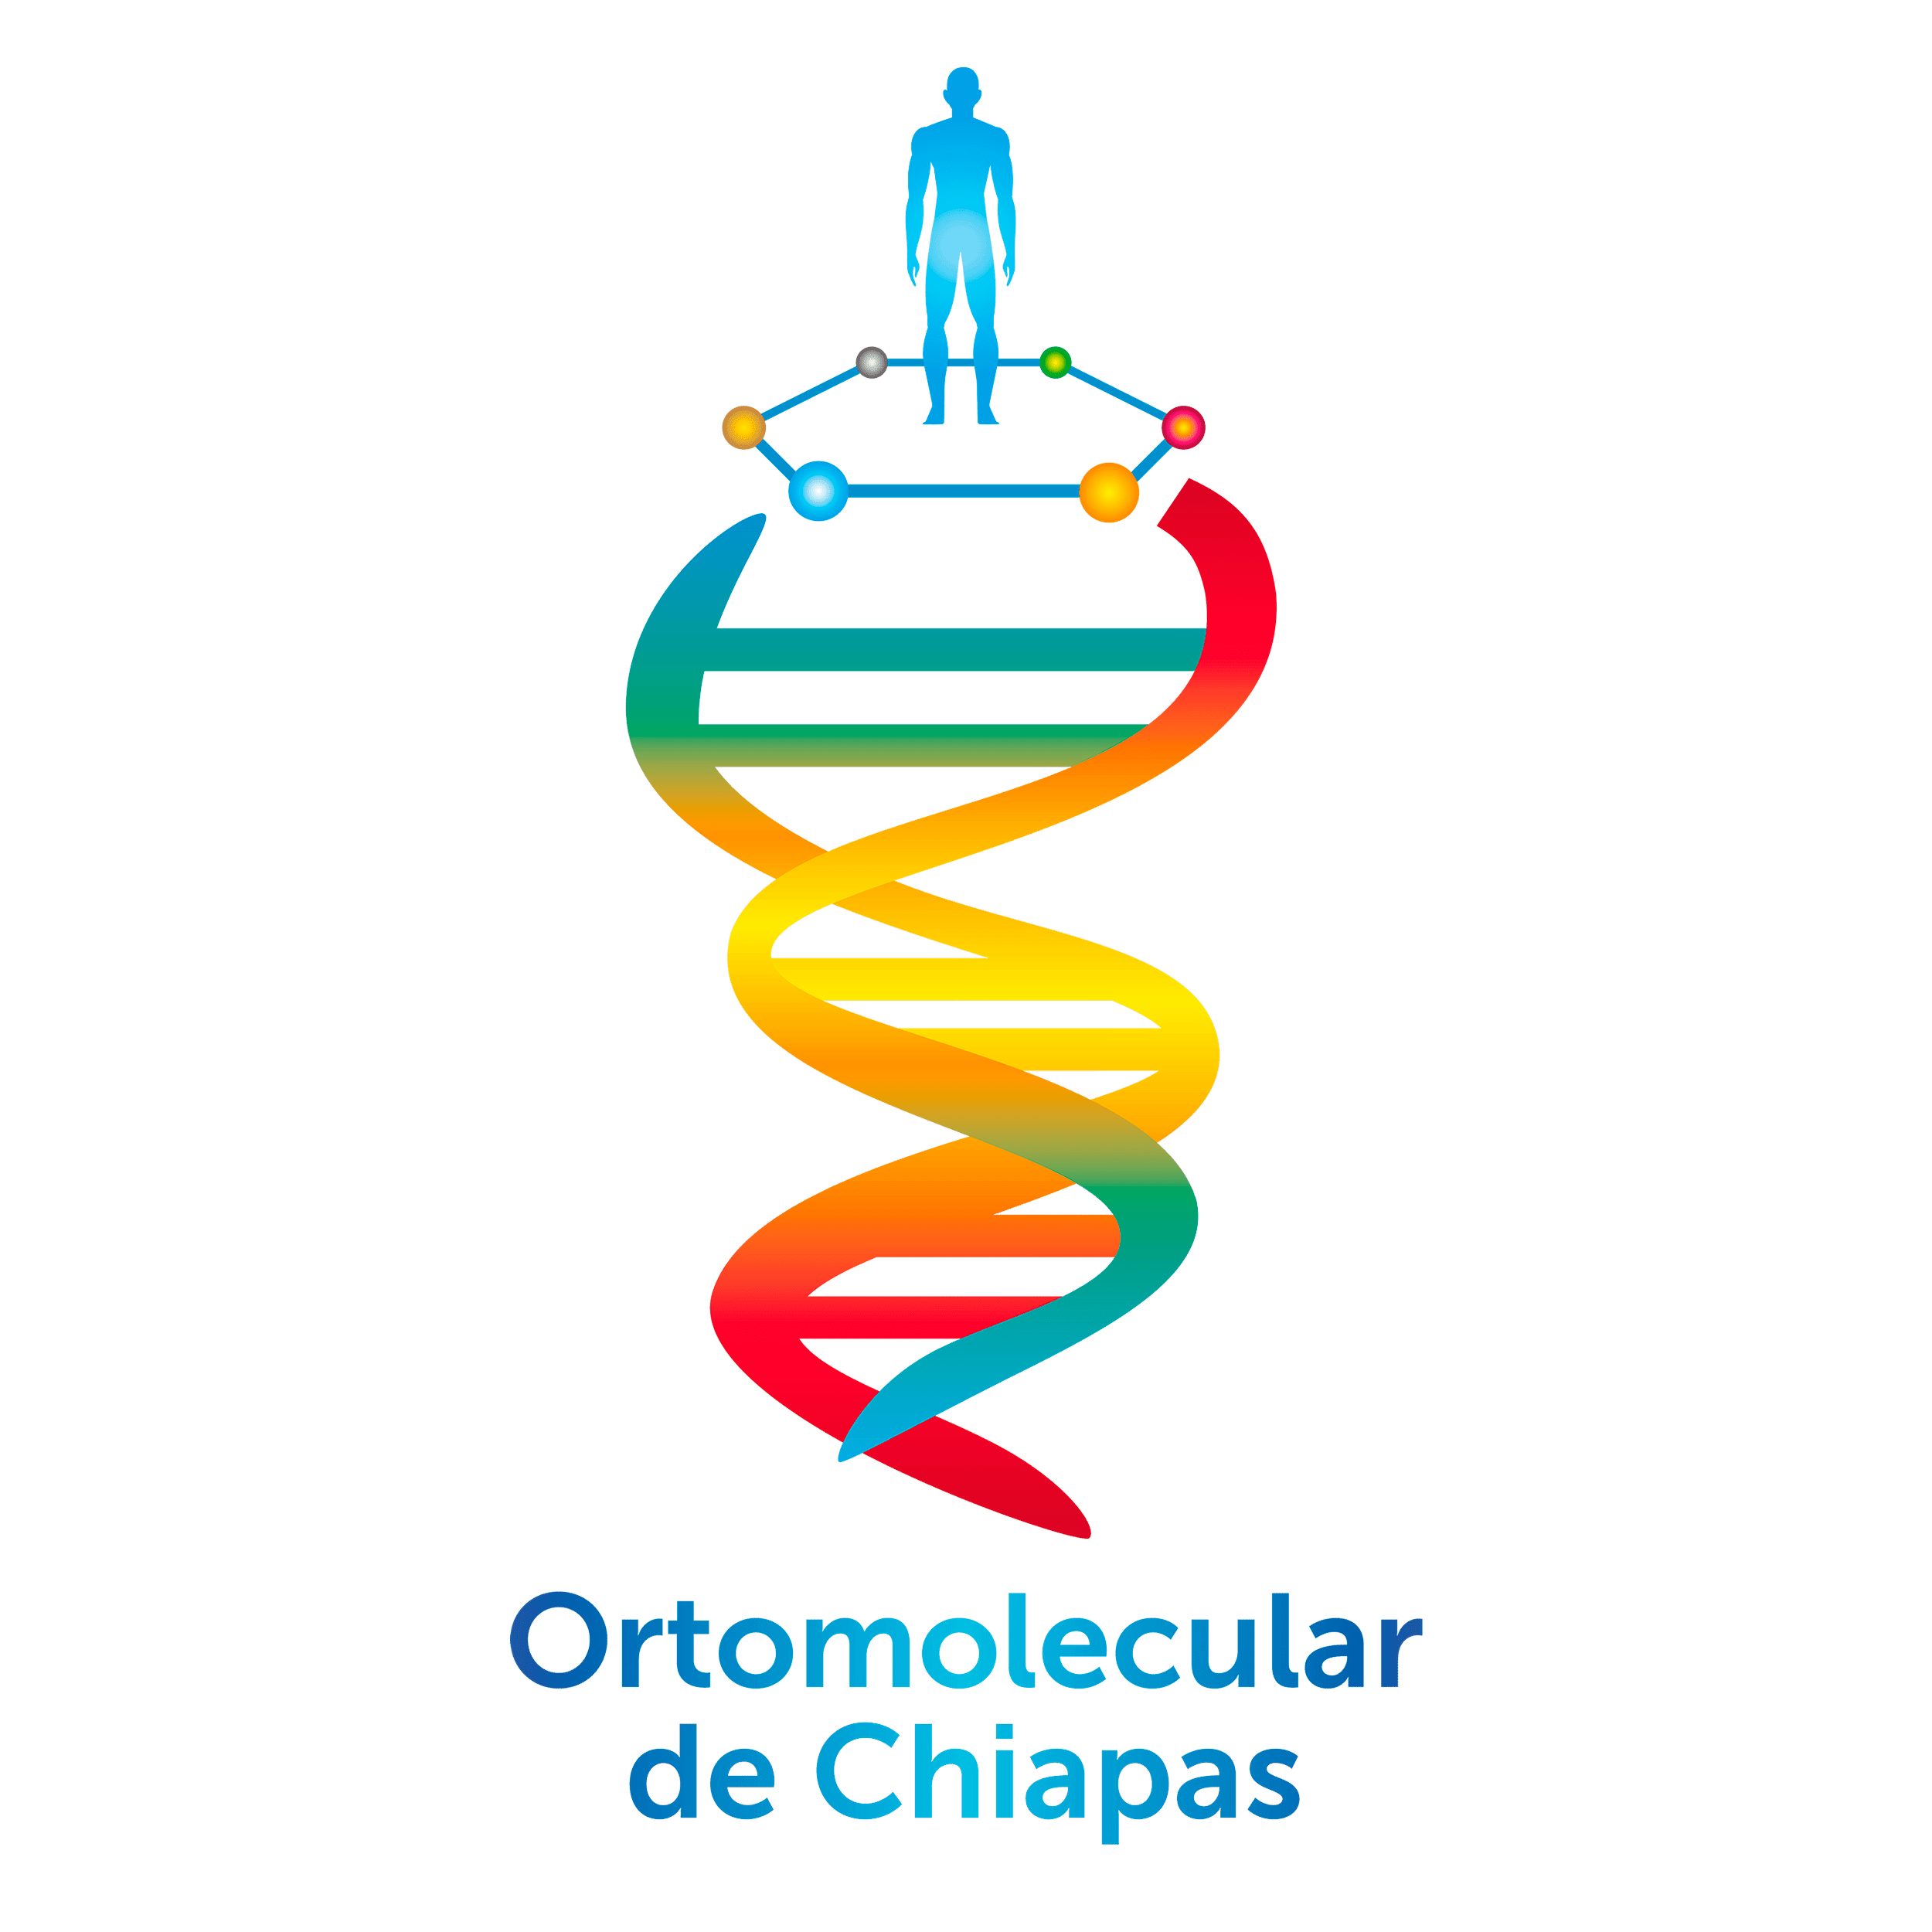 Ortomolecular de Chiapas